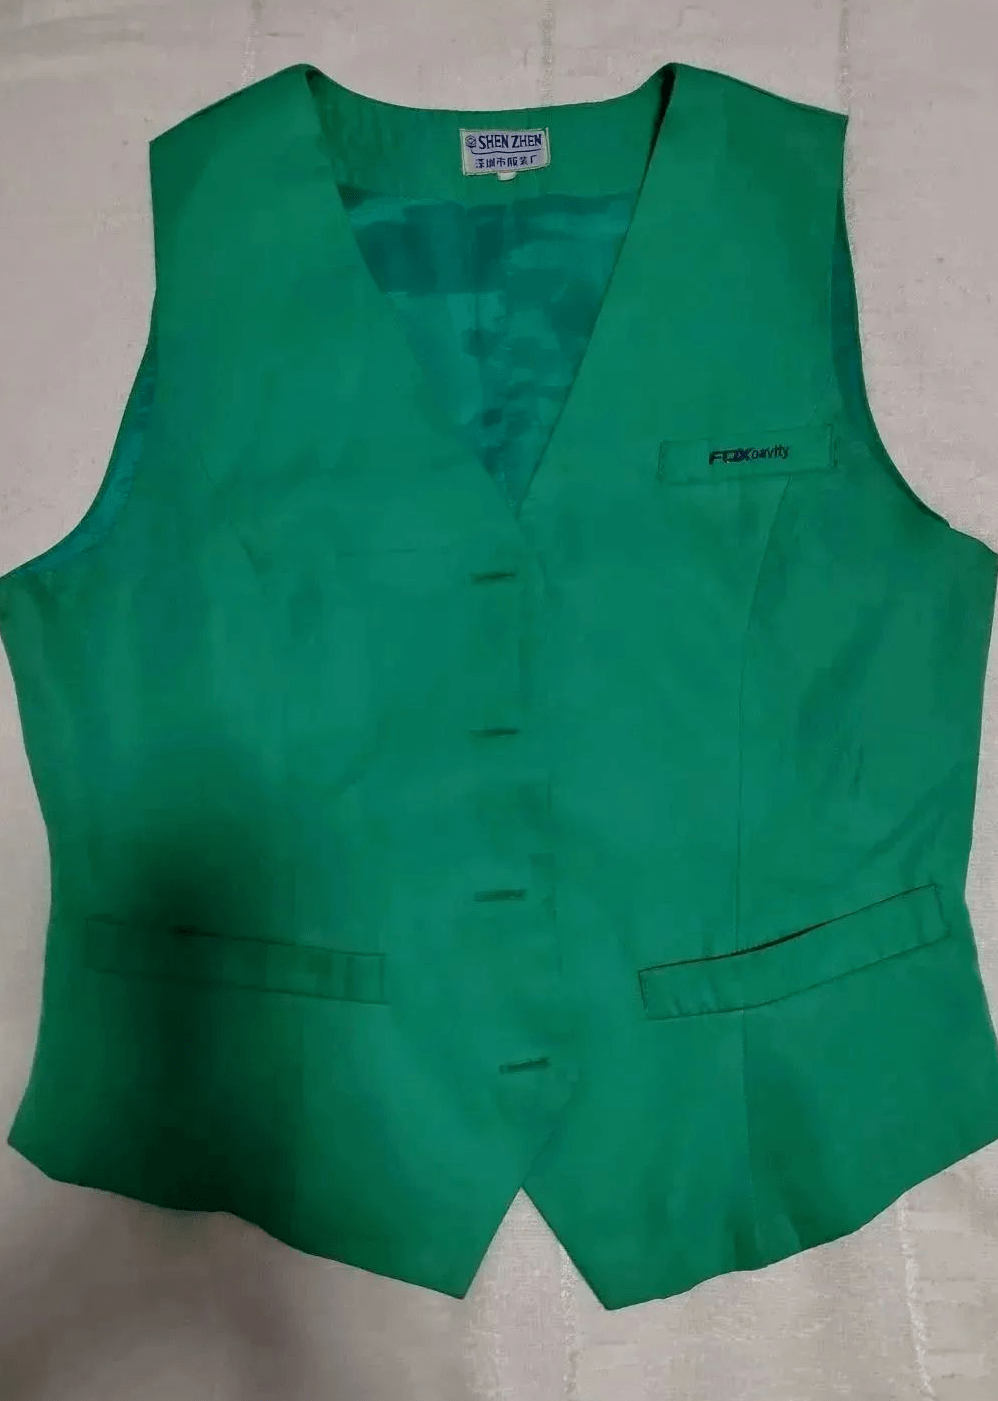 昆山园区肖红霞我1997年入职富士康,收到公司发的第一套工衣——马甲